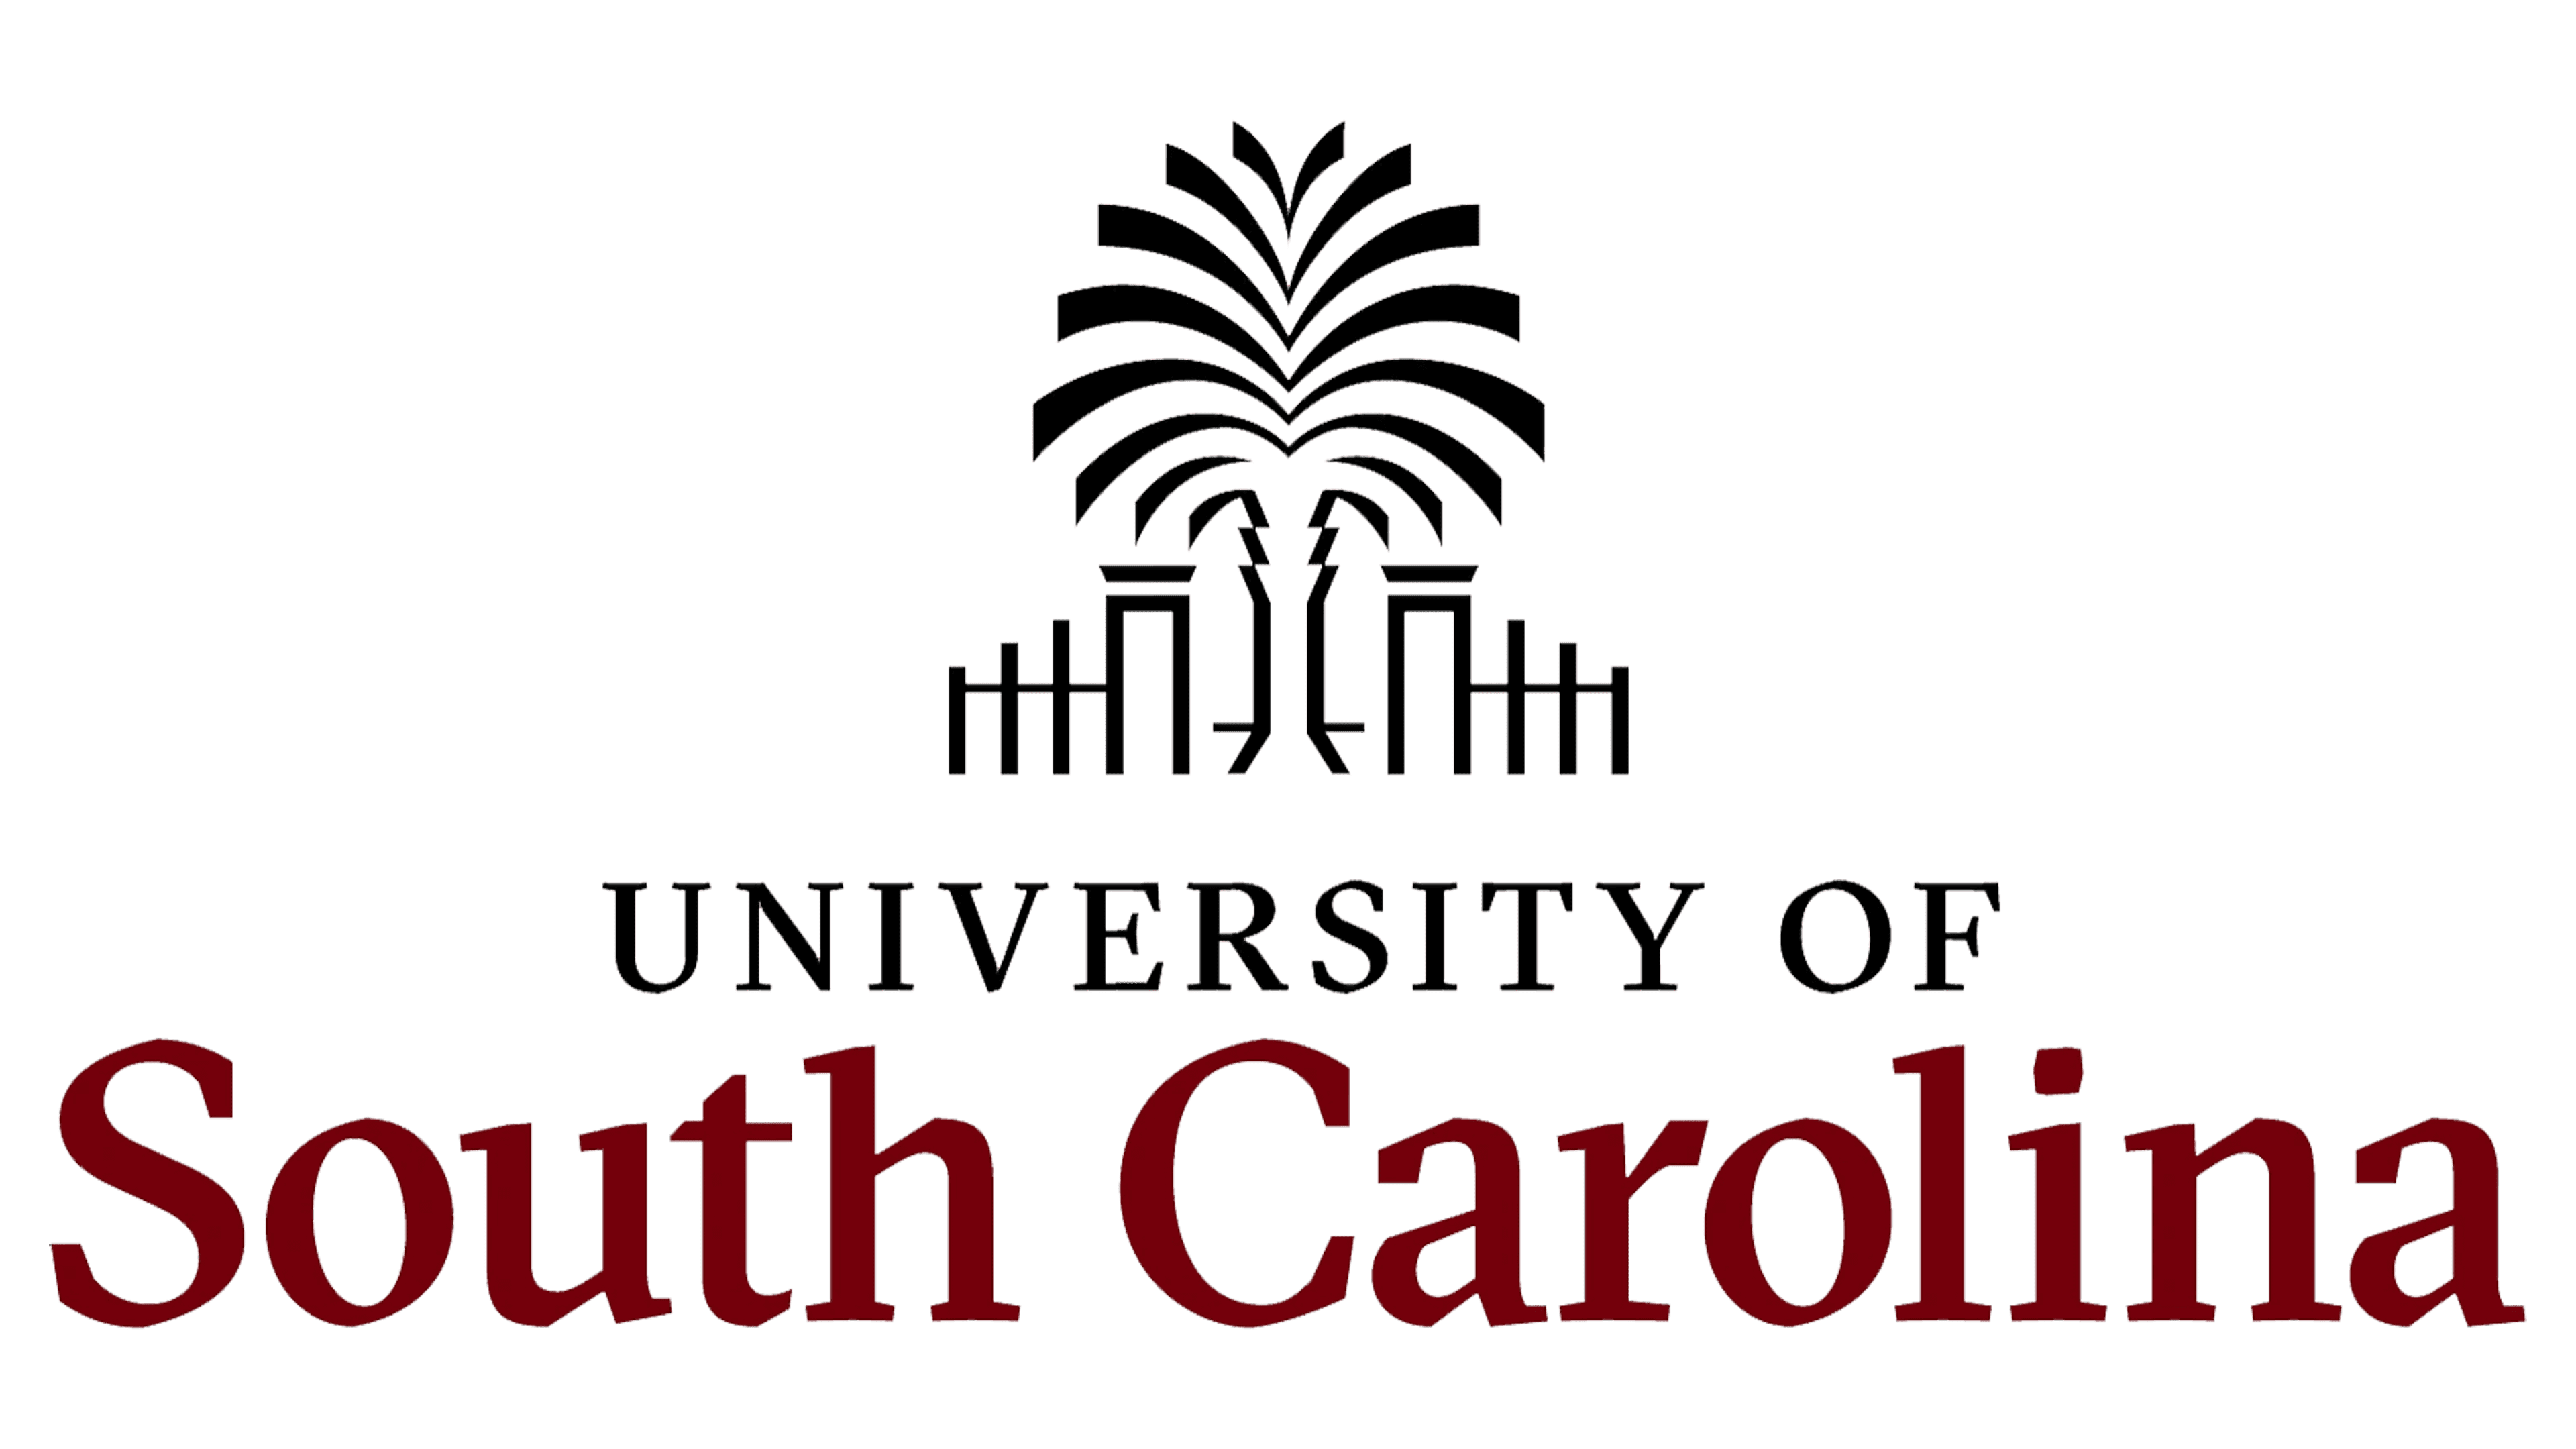 University of South Carolina Transparent Logo PNG